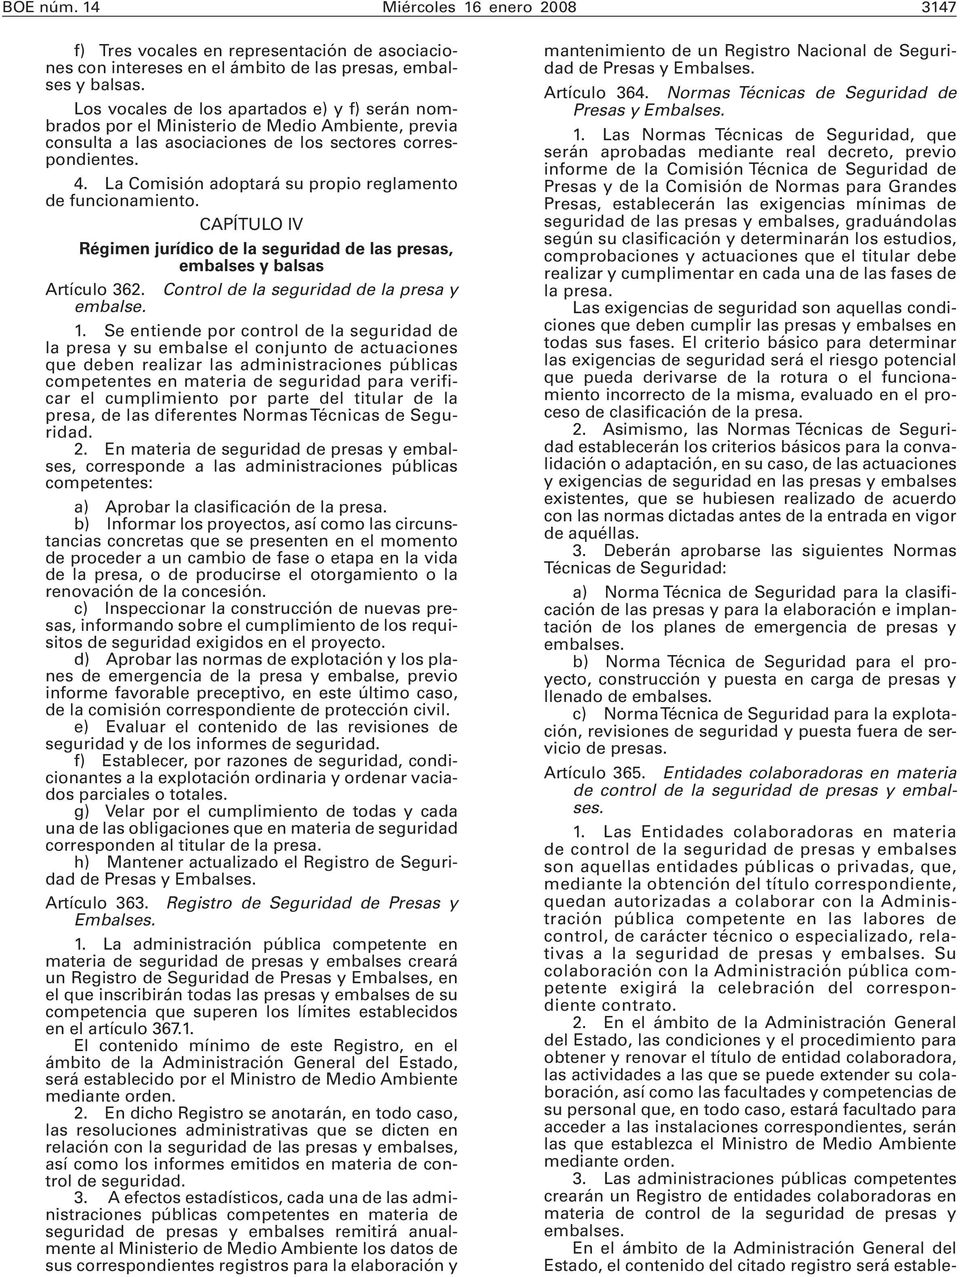 La Comisión adoptará su propio reglamento de funcionamiento. CAPÍTULO IV Régimen jurídico de la seguridad de las presas, embalses y balsas Artículo 362. Control de la seguridad de la presa y embalse.